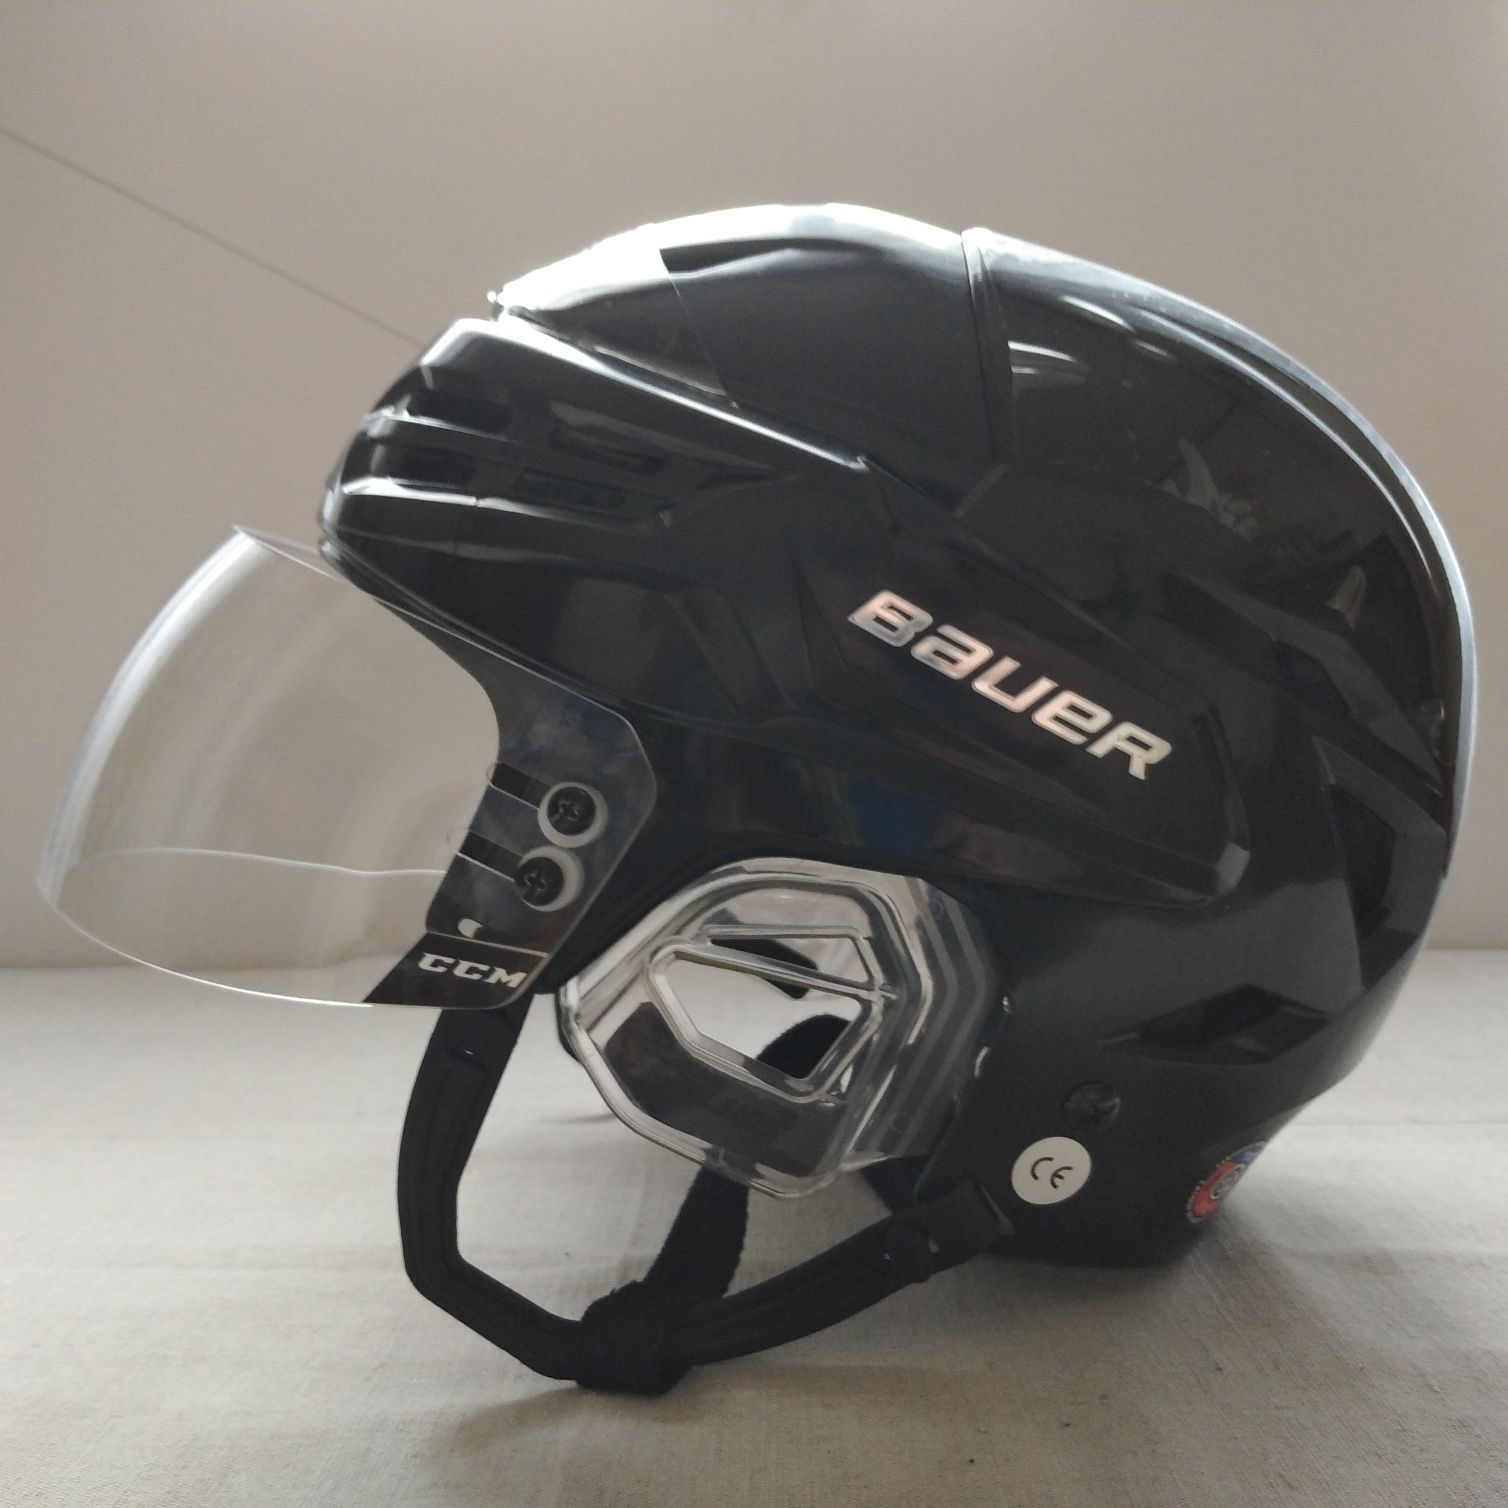 Продам хоккейный шлем Bauer Re-Akt 95